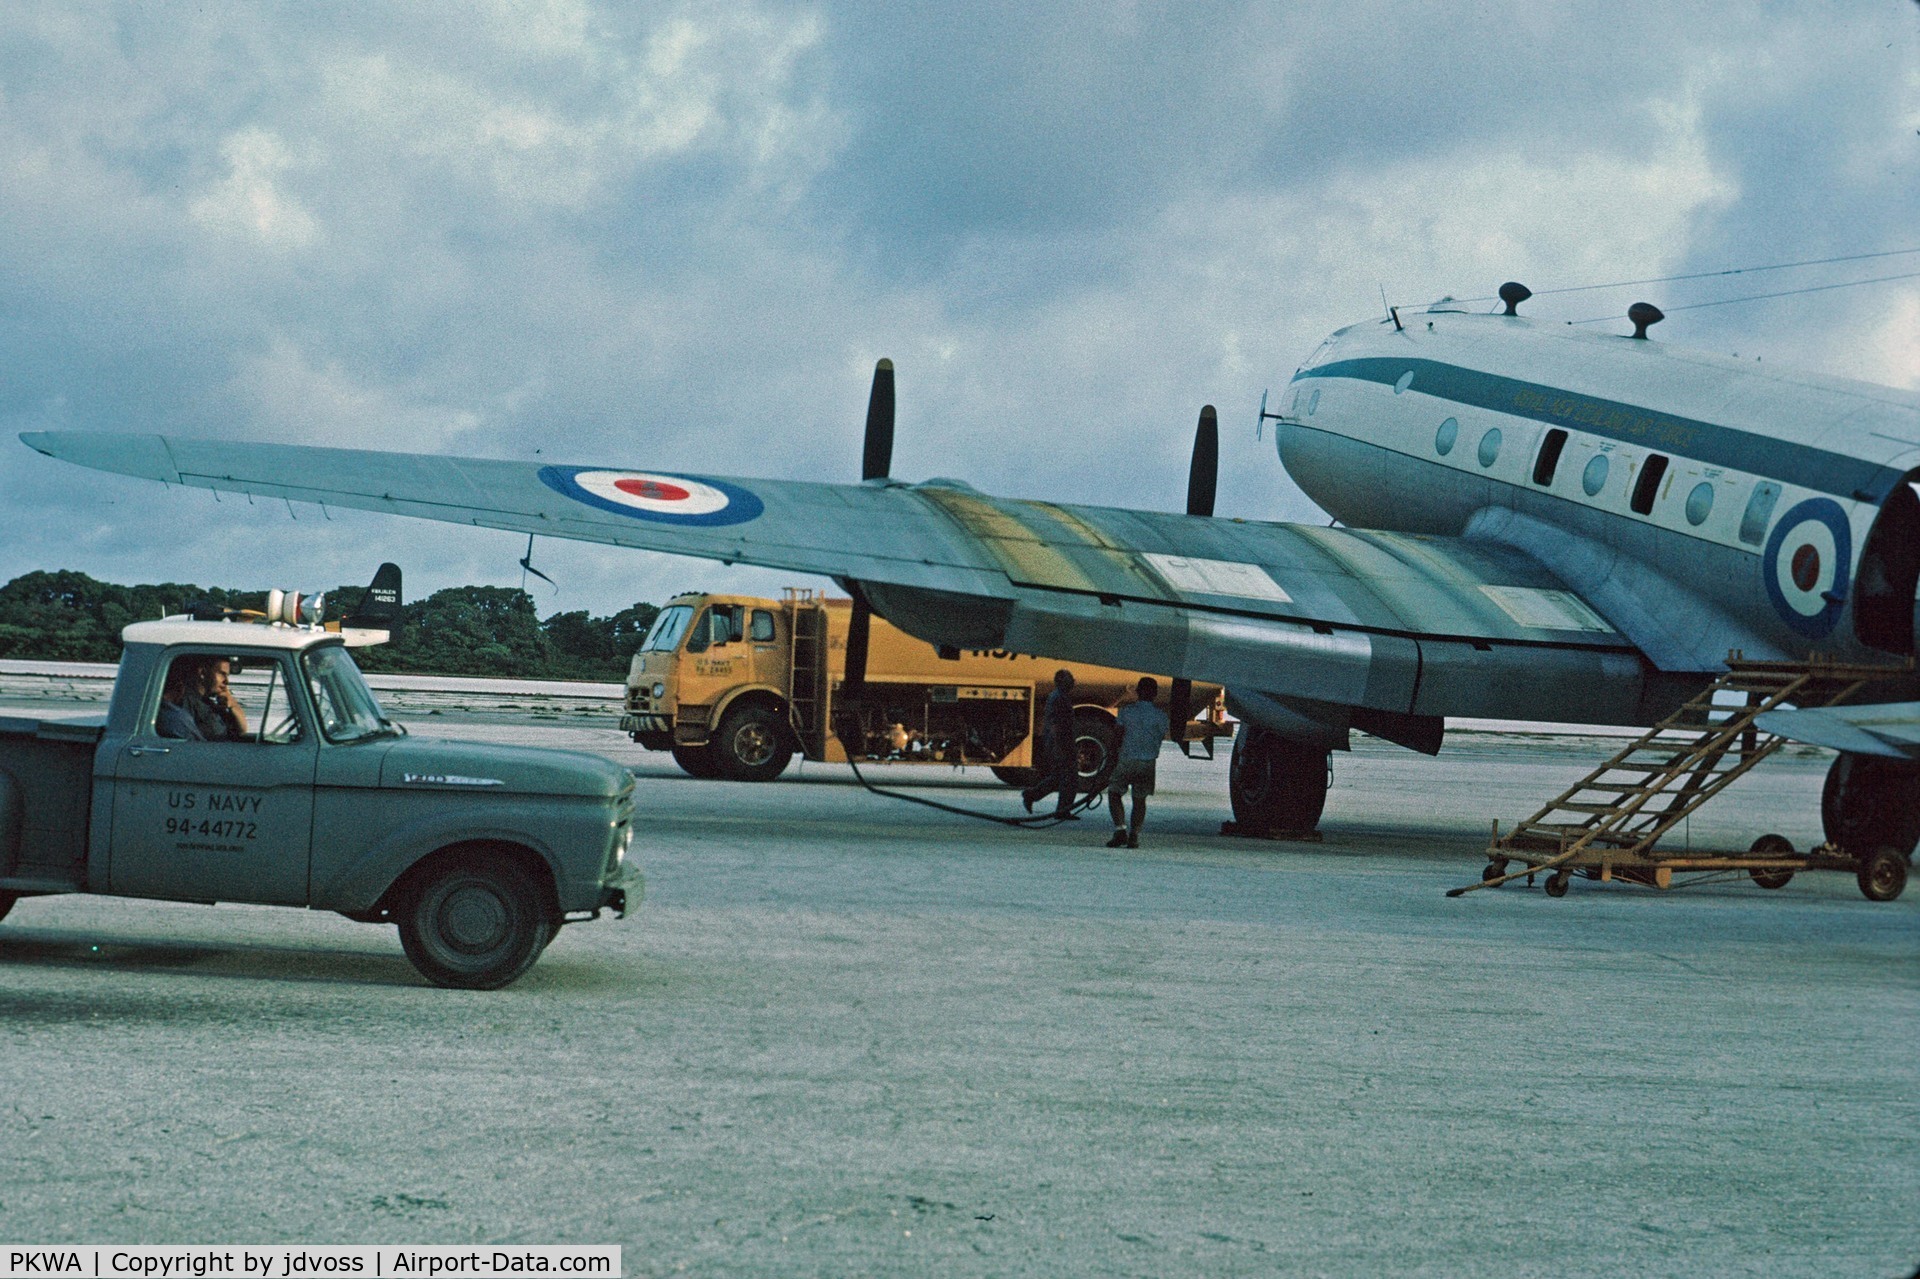 Kwajalein Airport, Kwajalein Marshall Islands (PKWA) - RNZAF Hastings undergoes fueling enroute to Guam